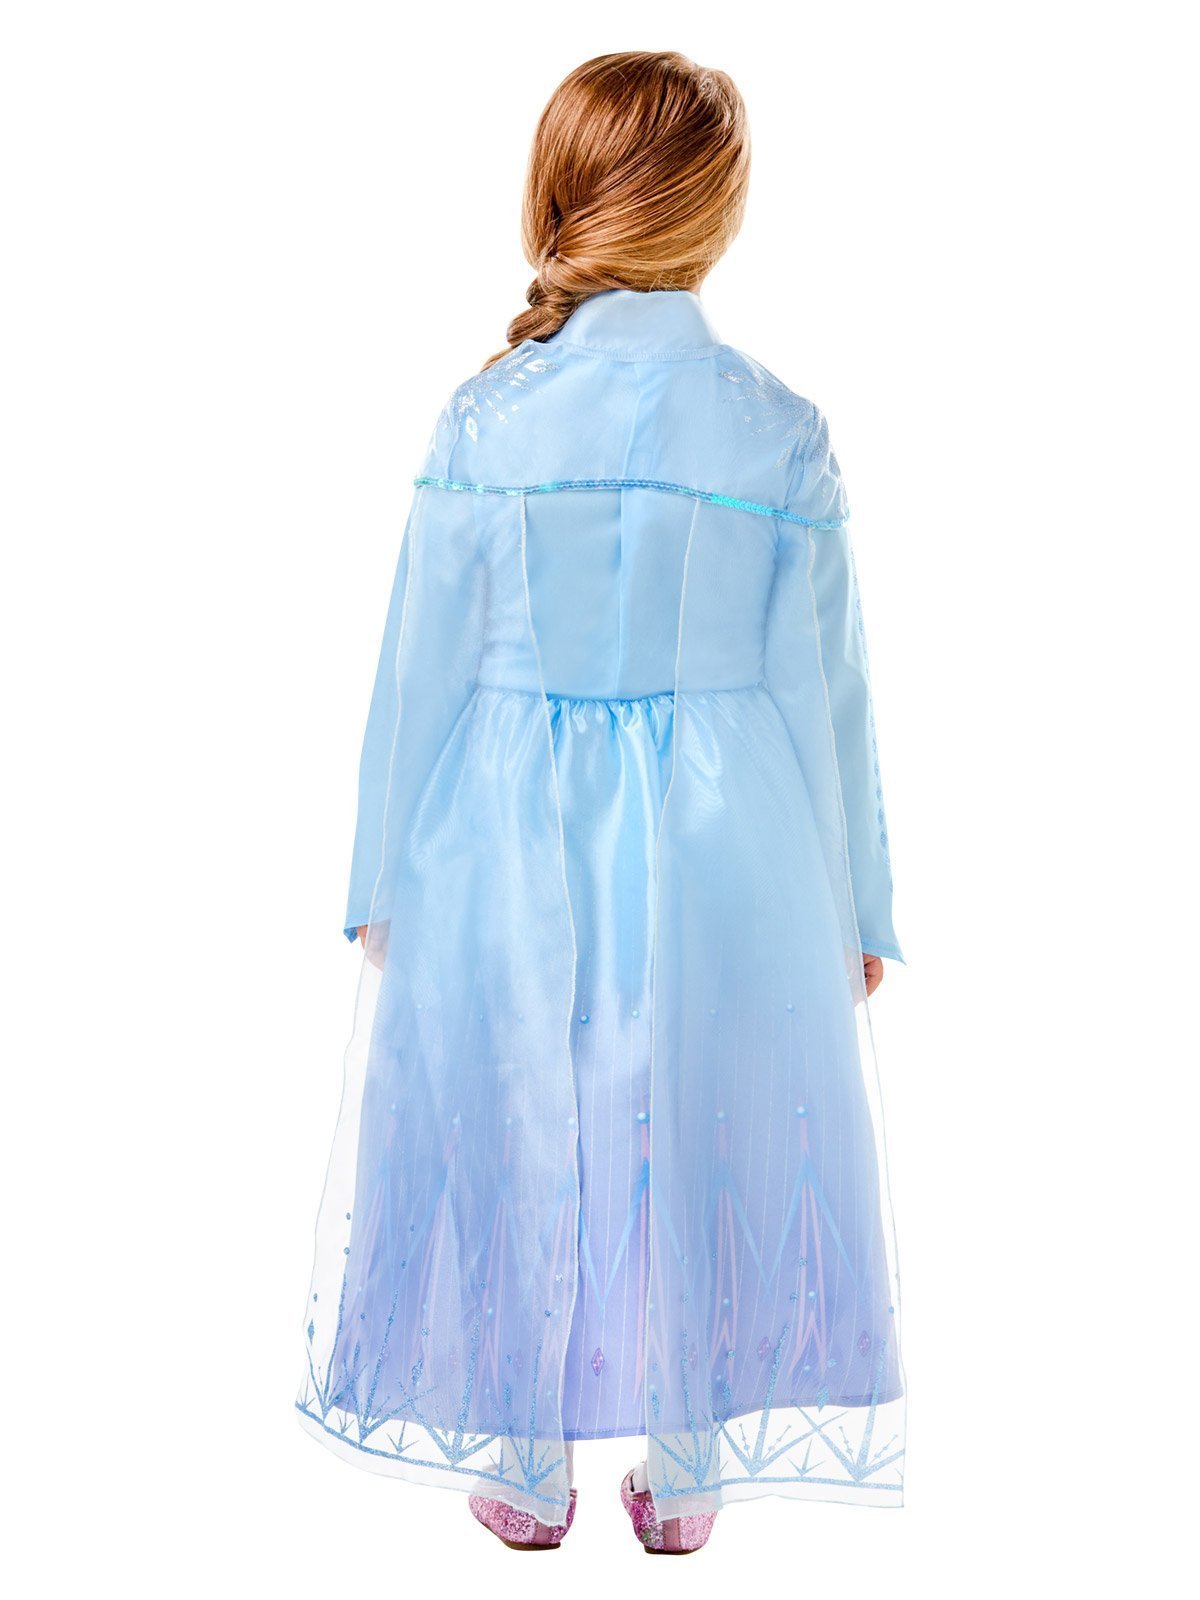 Elsa Frozen deluxe costume for girls - Frozen 2. The coolest